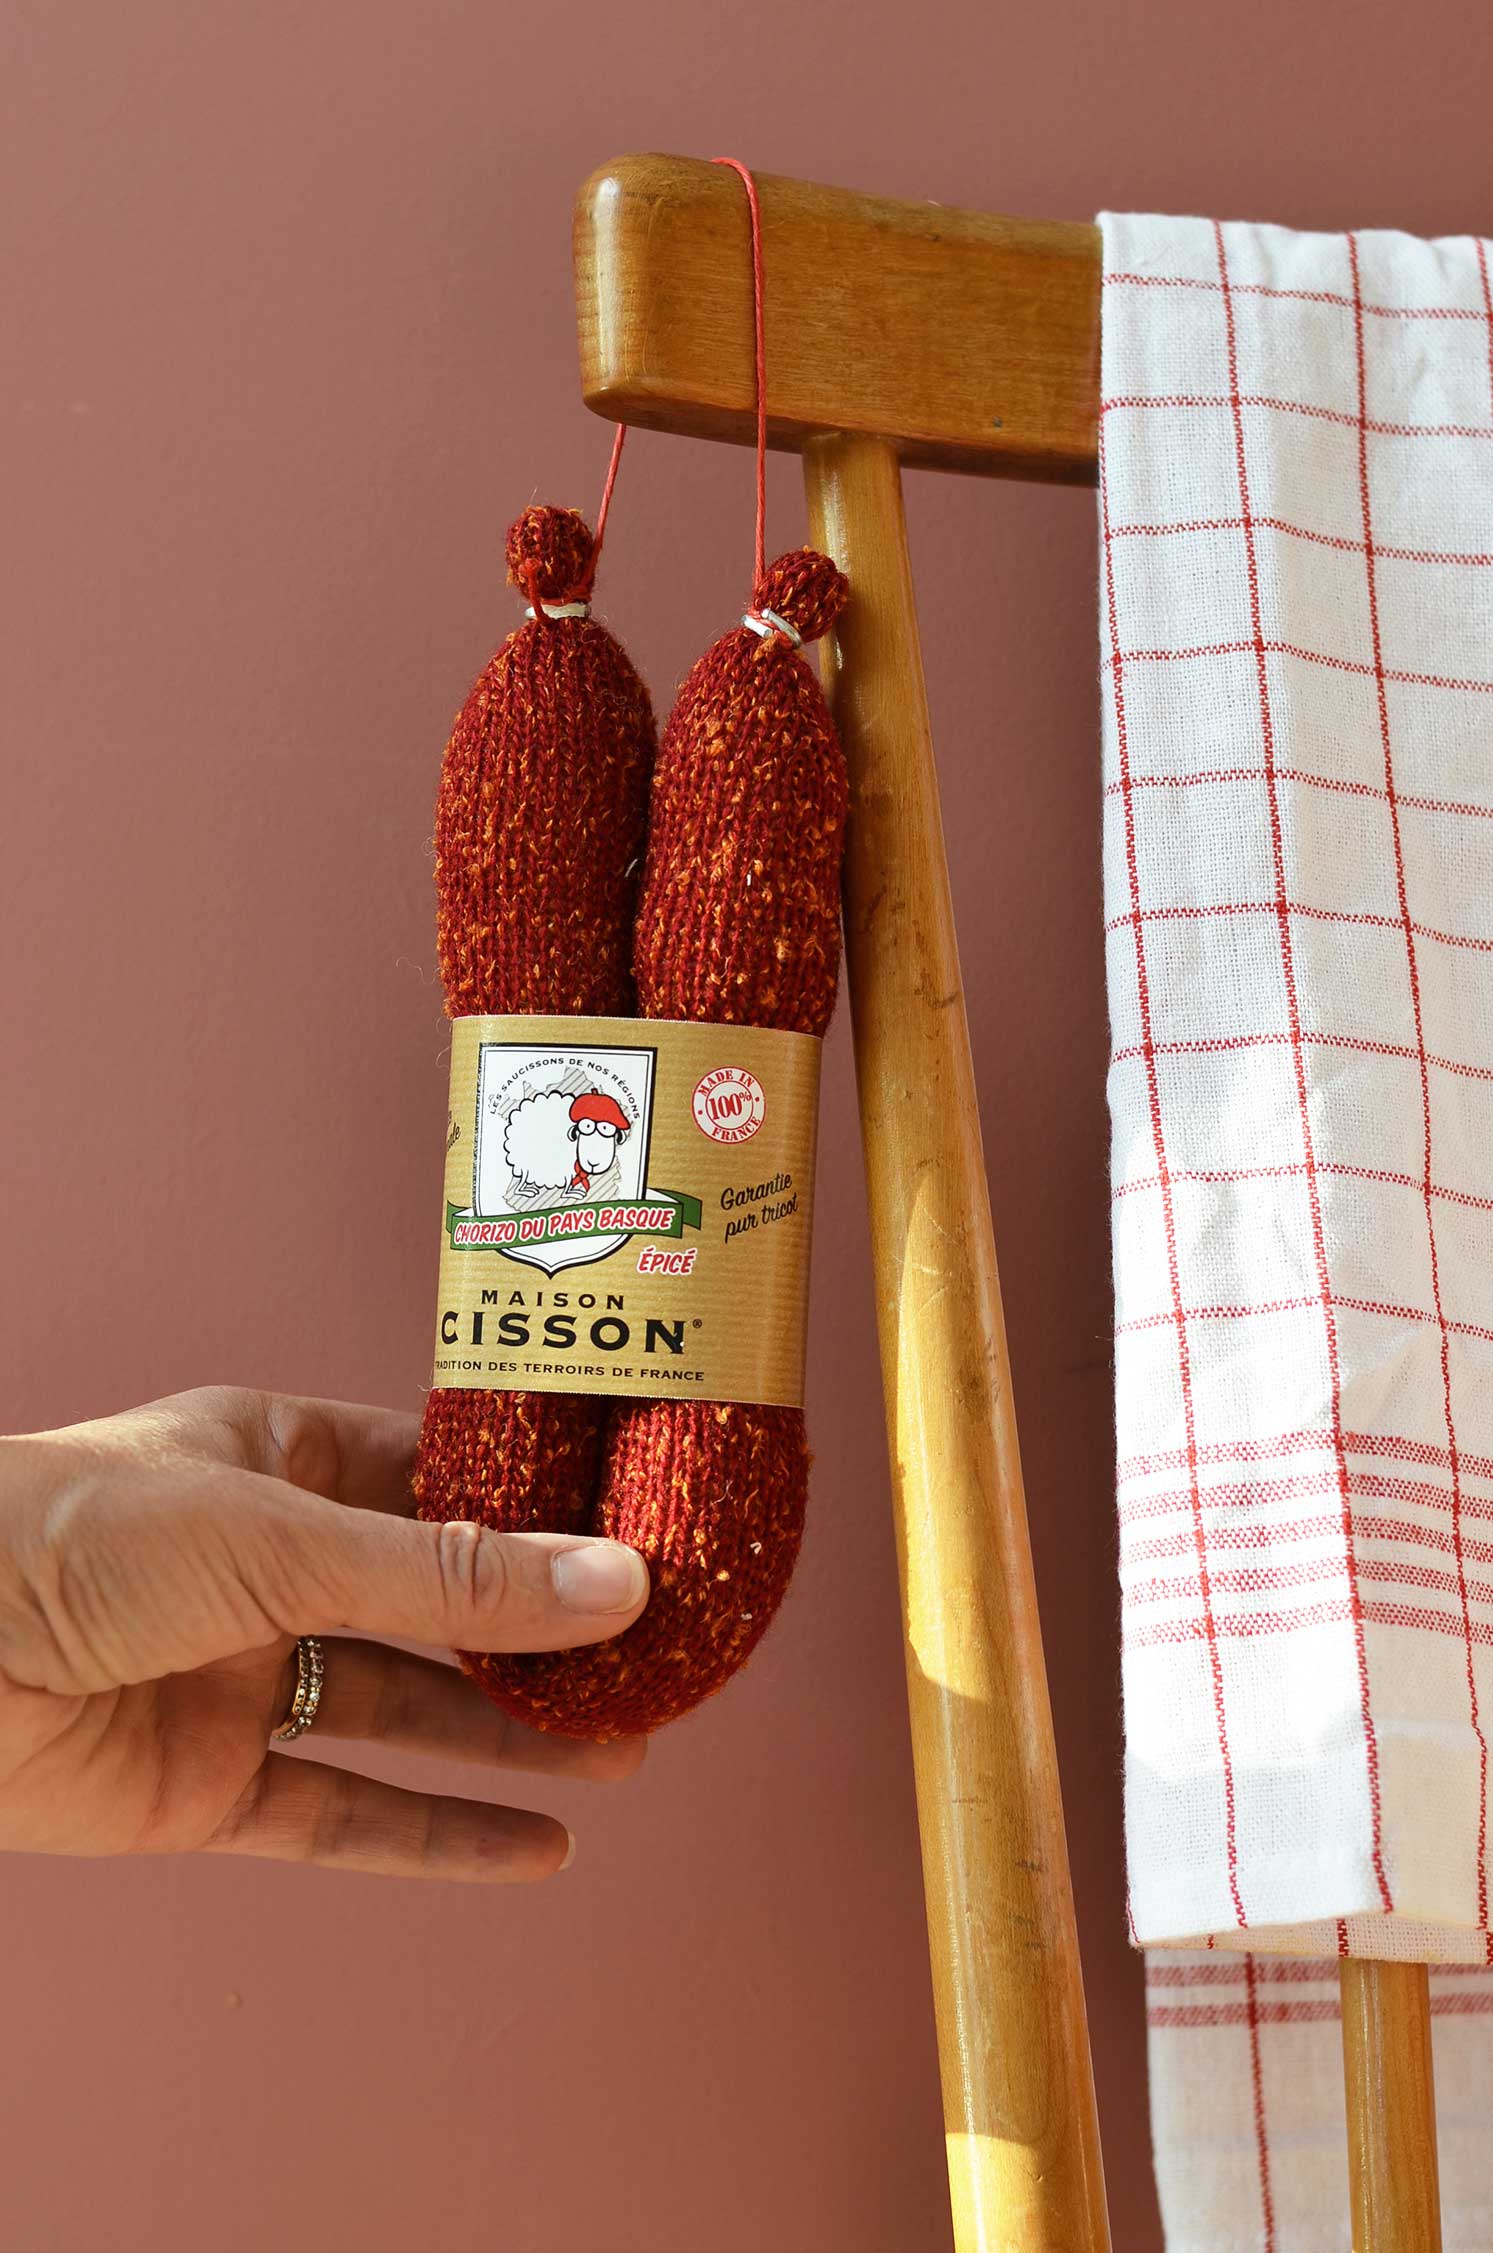 Le véritable saucisson à l'ancienne” – Saucisson Maison Cisson